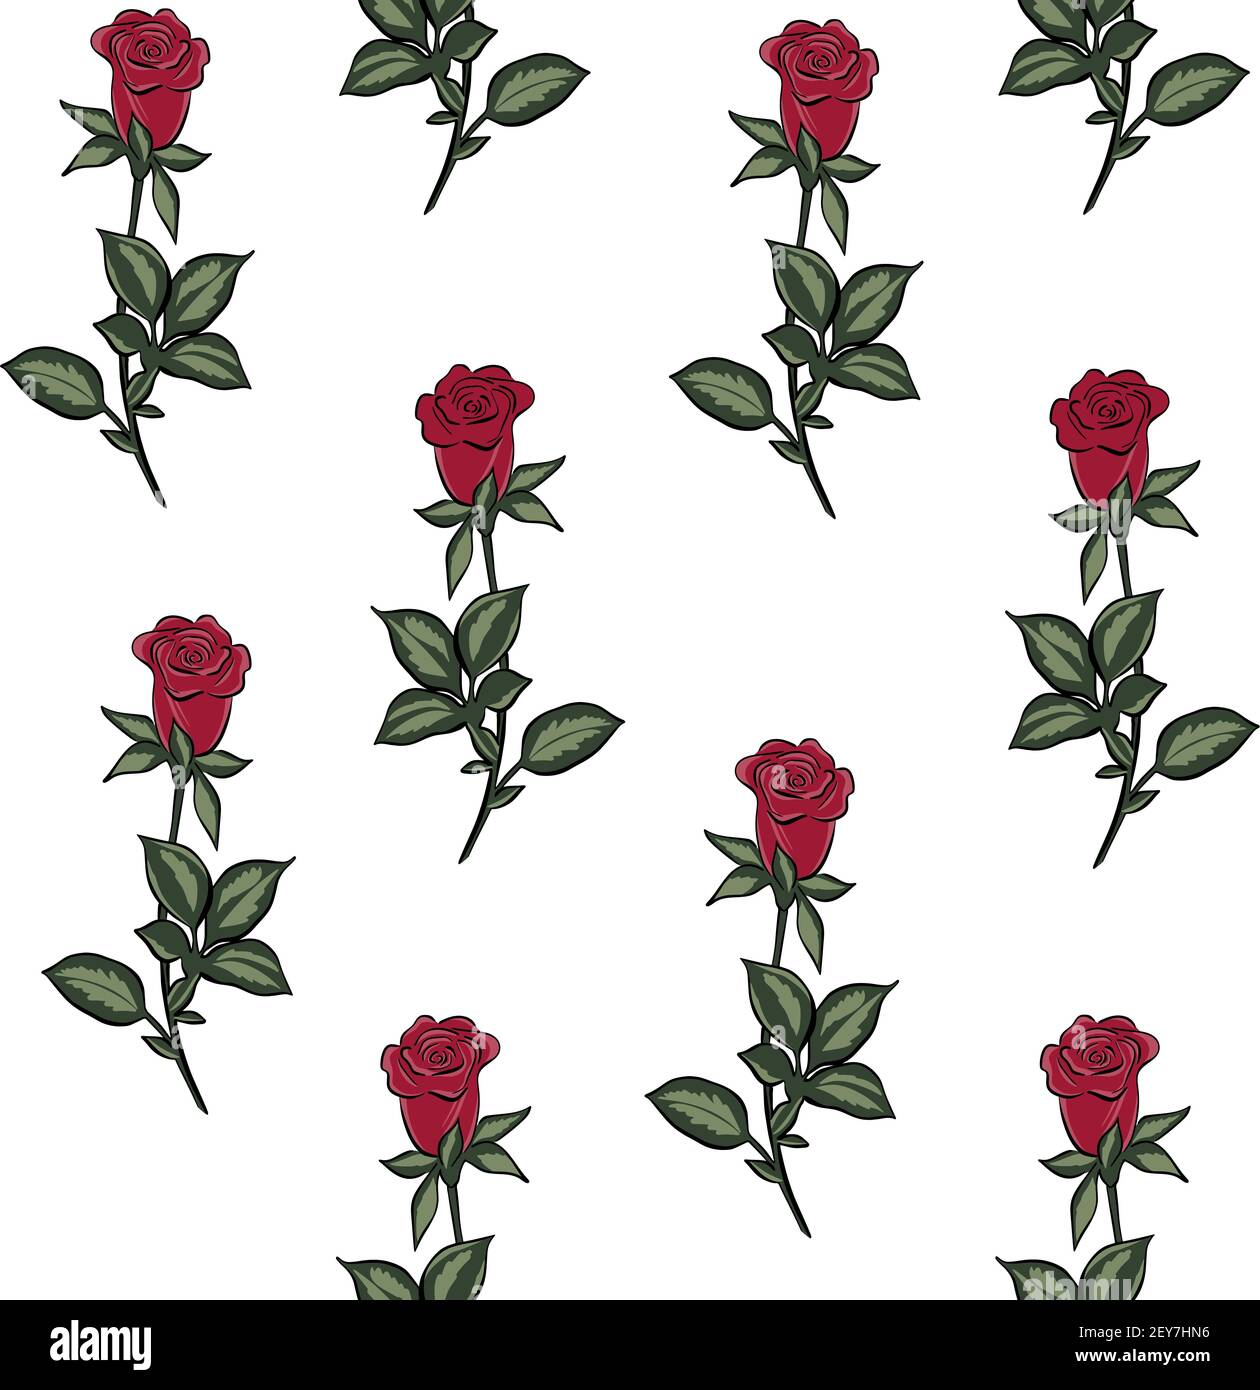 Nahtloses Muster mit roten Rosen. Wiederholendes solides Muster mit roten Gartenblumen. Vektor. Blumenhintergrund. Stock Vektor